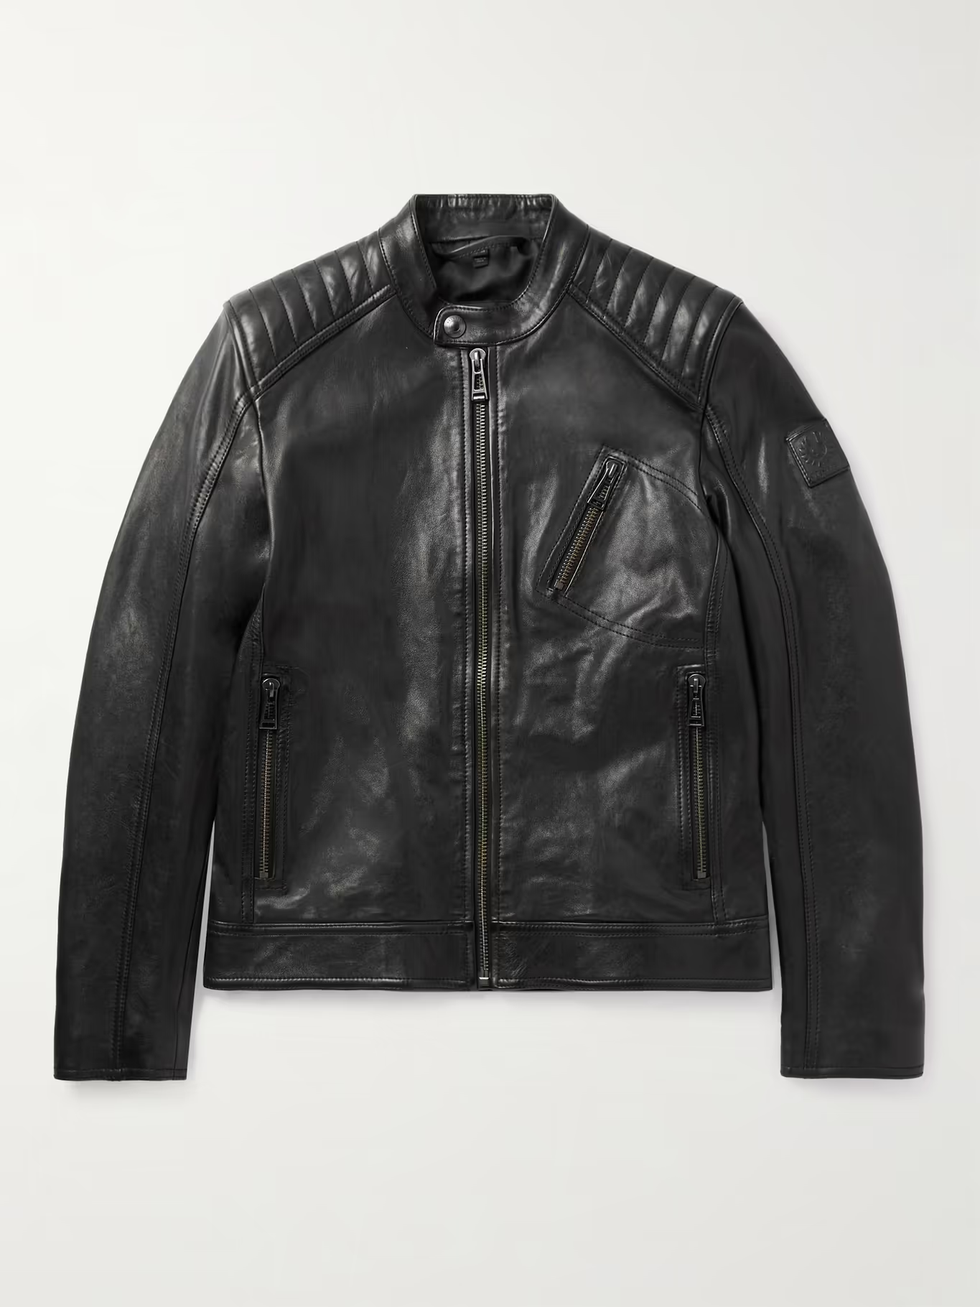 V Racer 2.0 Leather Jacket